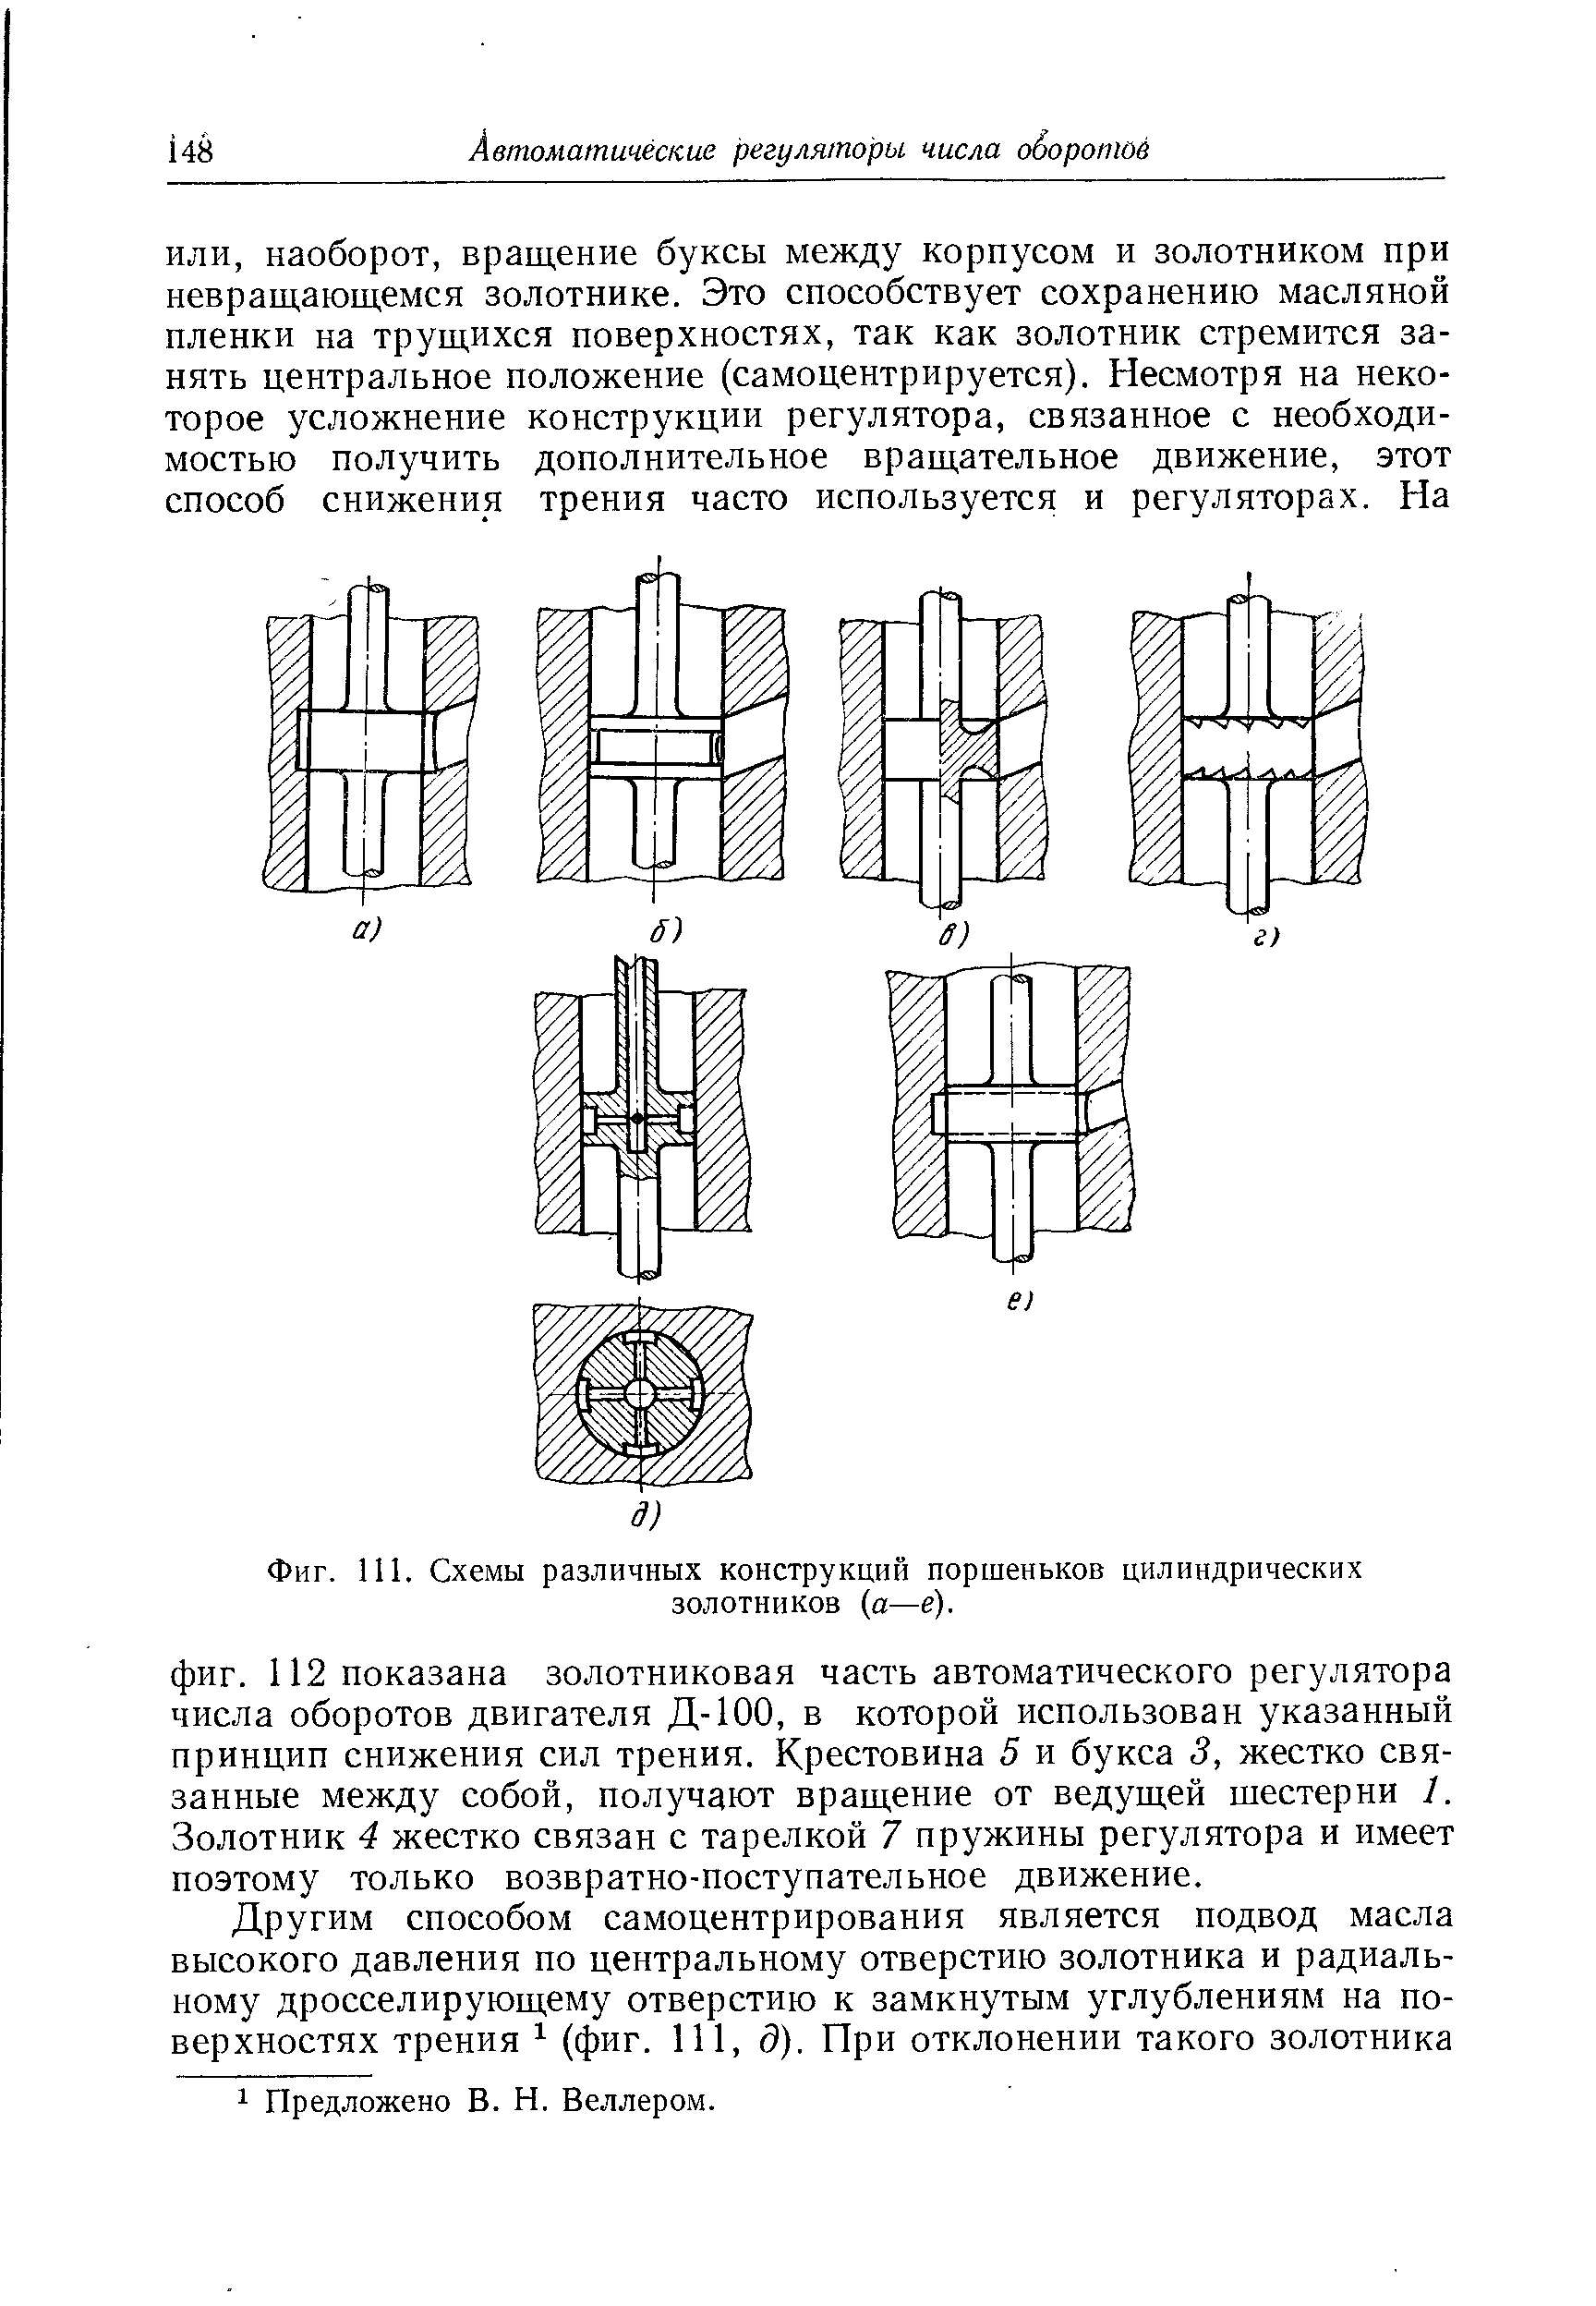 Фиг. 111. Схемы различных конструкций поршеньков цилиндрических золотников (а—е).
